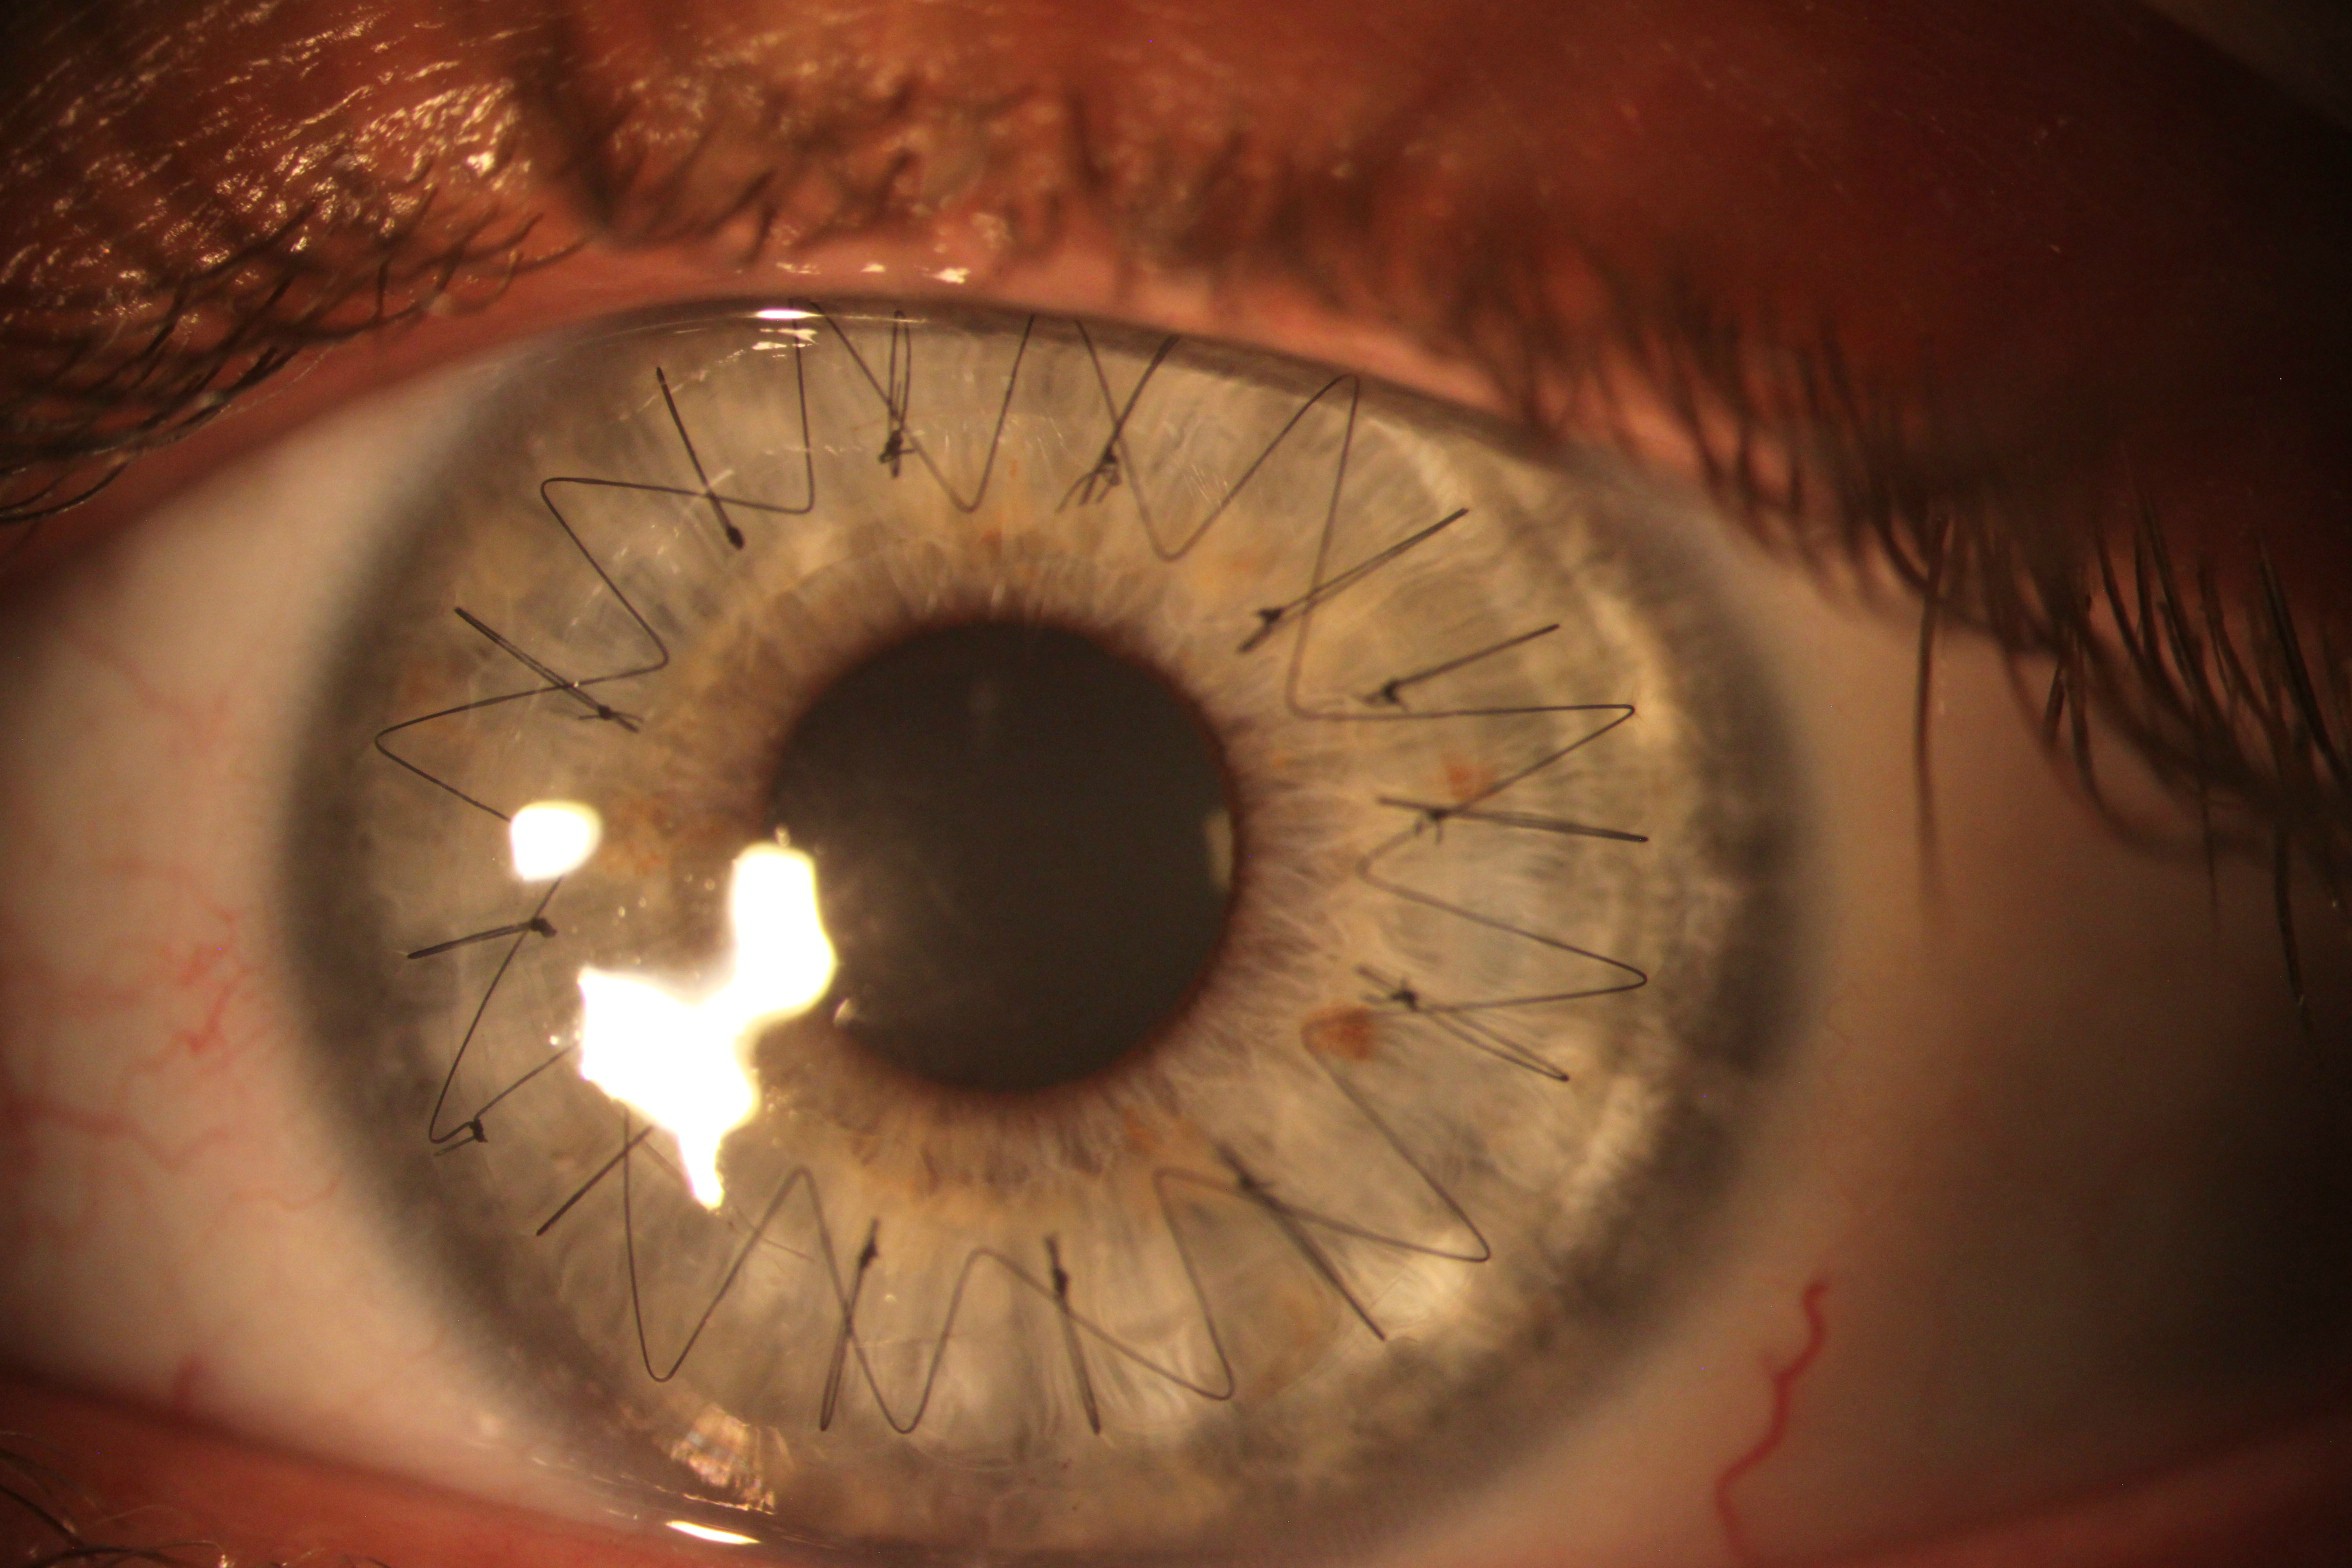 stitches in eye